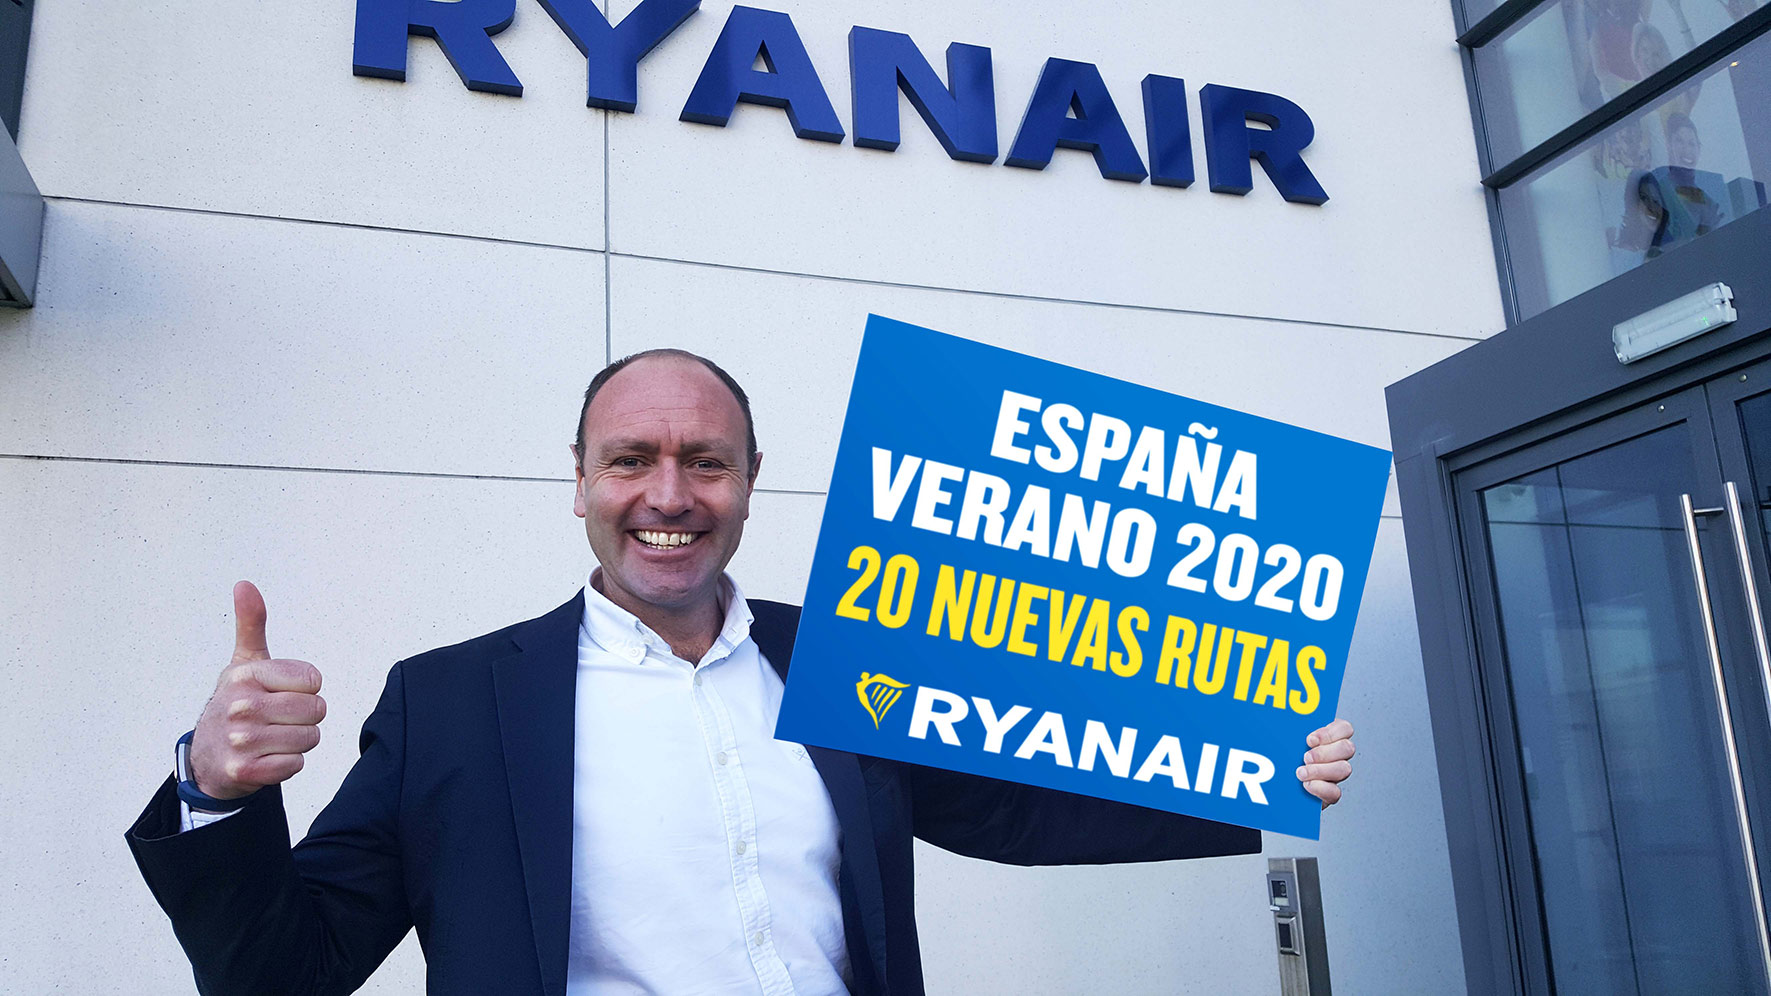 RYANAIR ANUNCIA SU CALENDARIO DE VERANO 2020 CON 20 NUEVAS RUTAS EN ESPAÑA